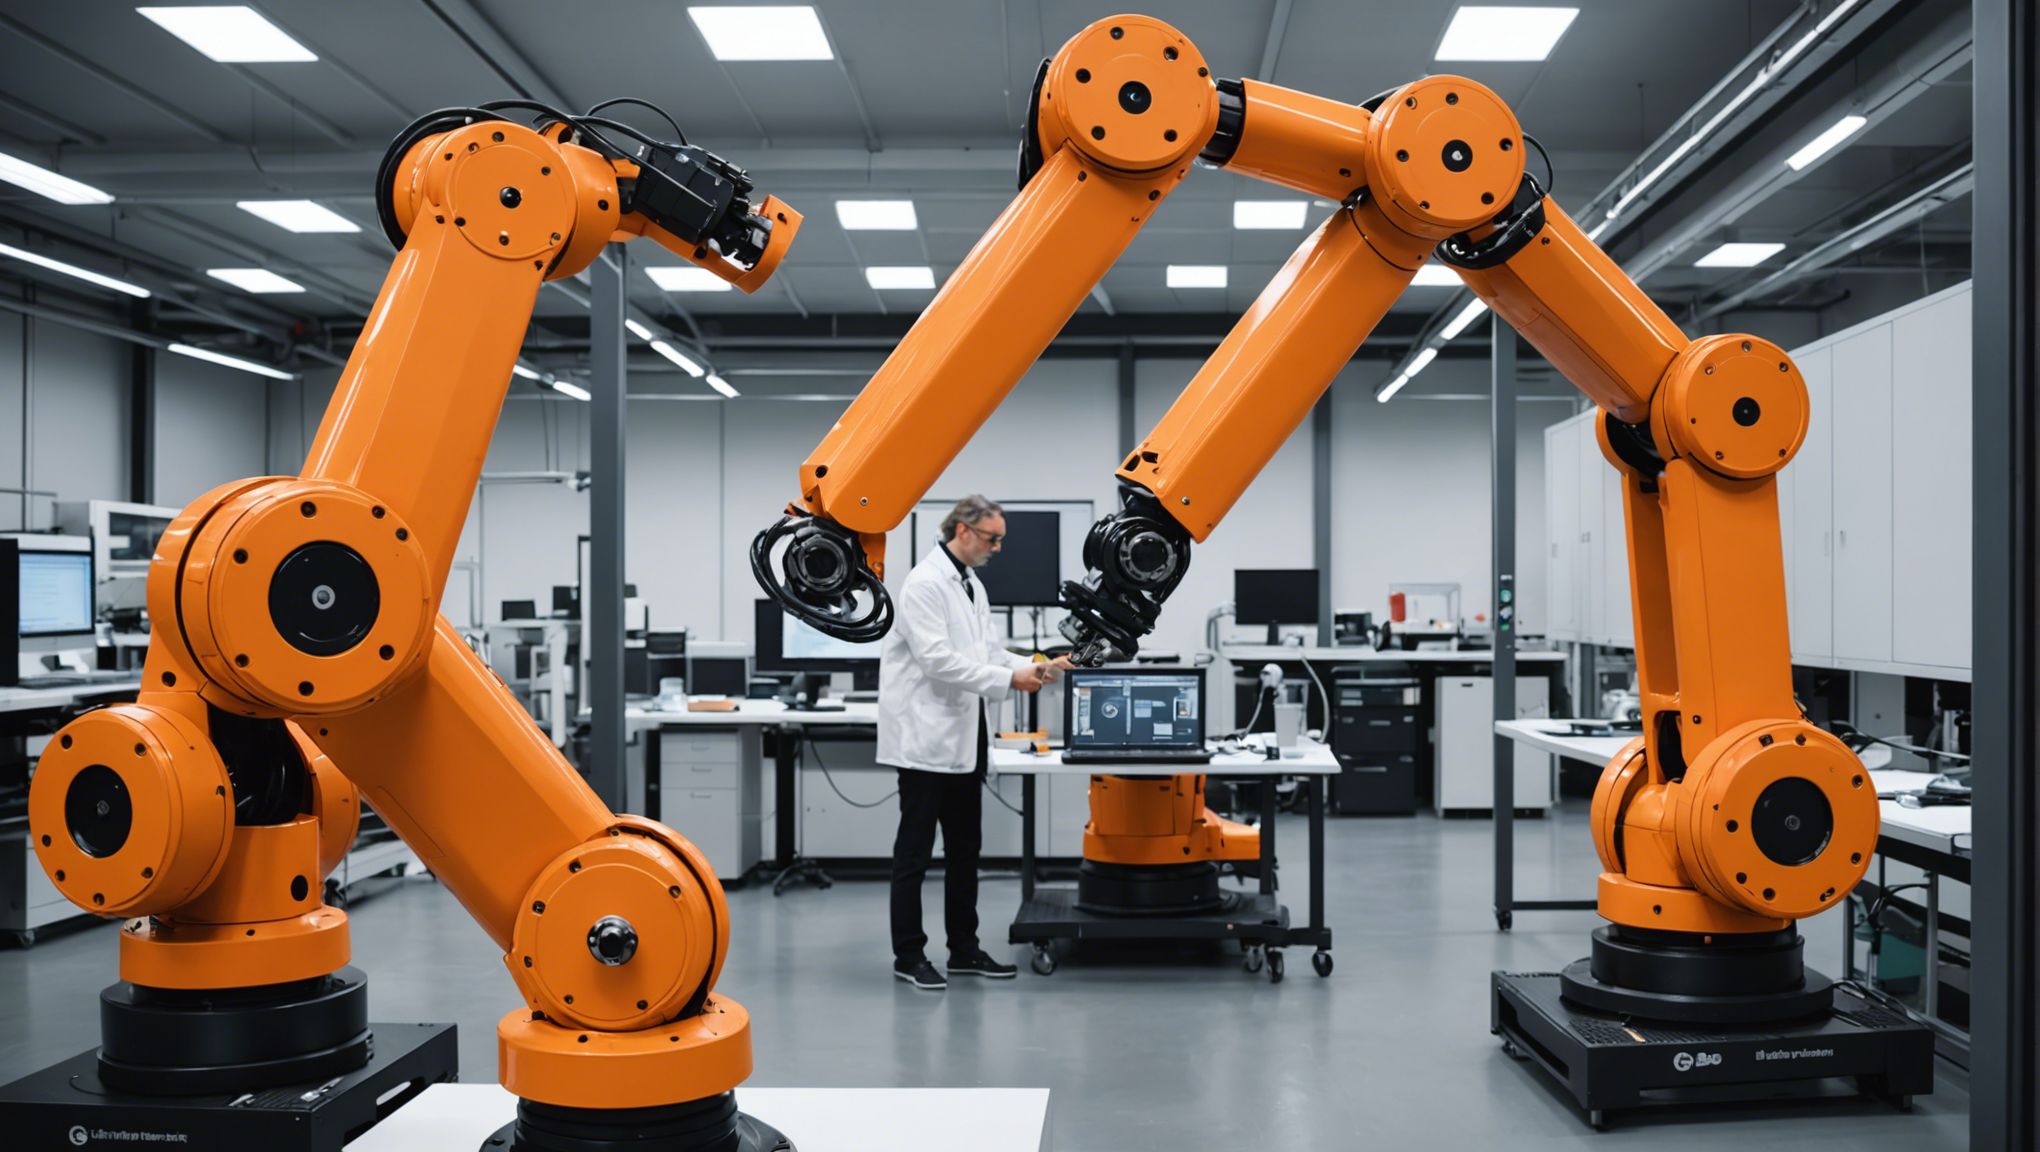 découvrez comment l'intégration des robots collaboratifs révolutionne l'industrie. obtenez des informations clés sur cette évolution majeure avec notre article.